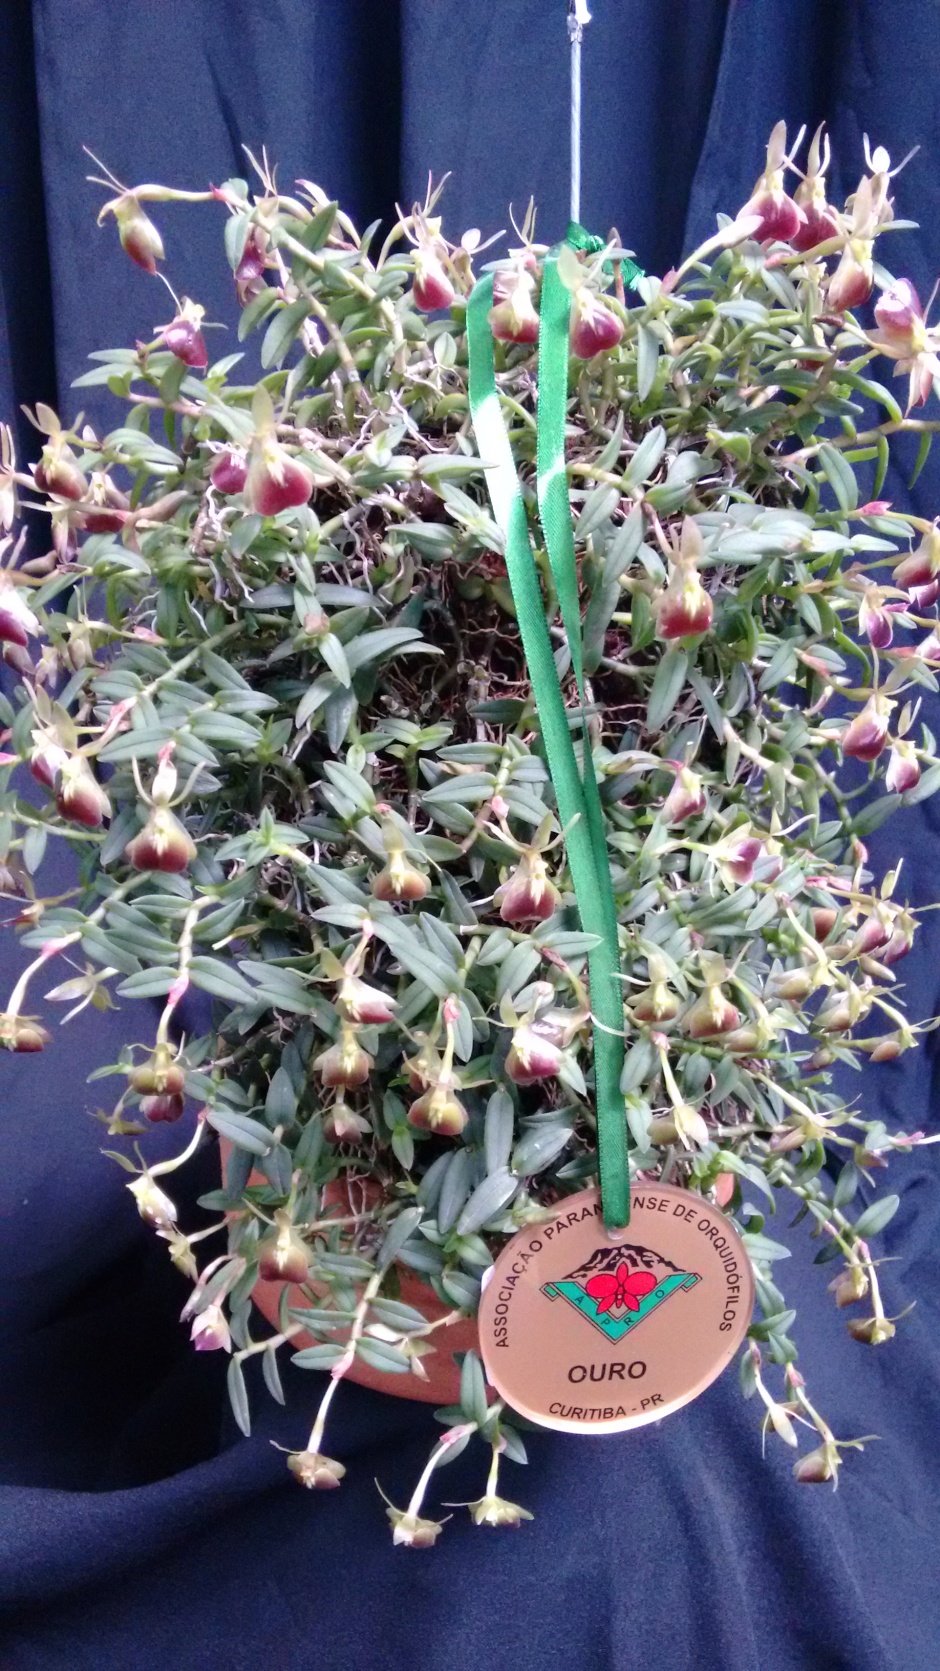 Epidendrum peperomia - associação Orquidofila Iratiense - agraciada com Medalha de ouro e Melhor Botanica da 111 exp orq bosque sao cristovao - 7abril18 - 1